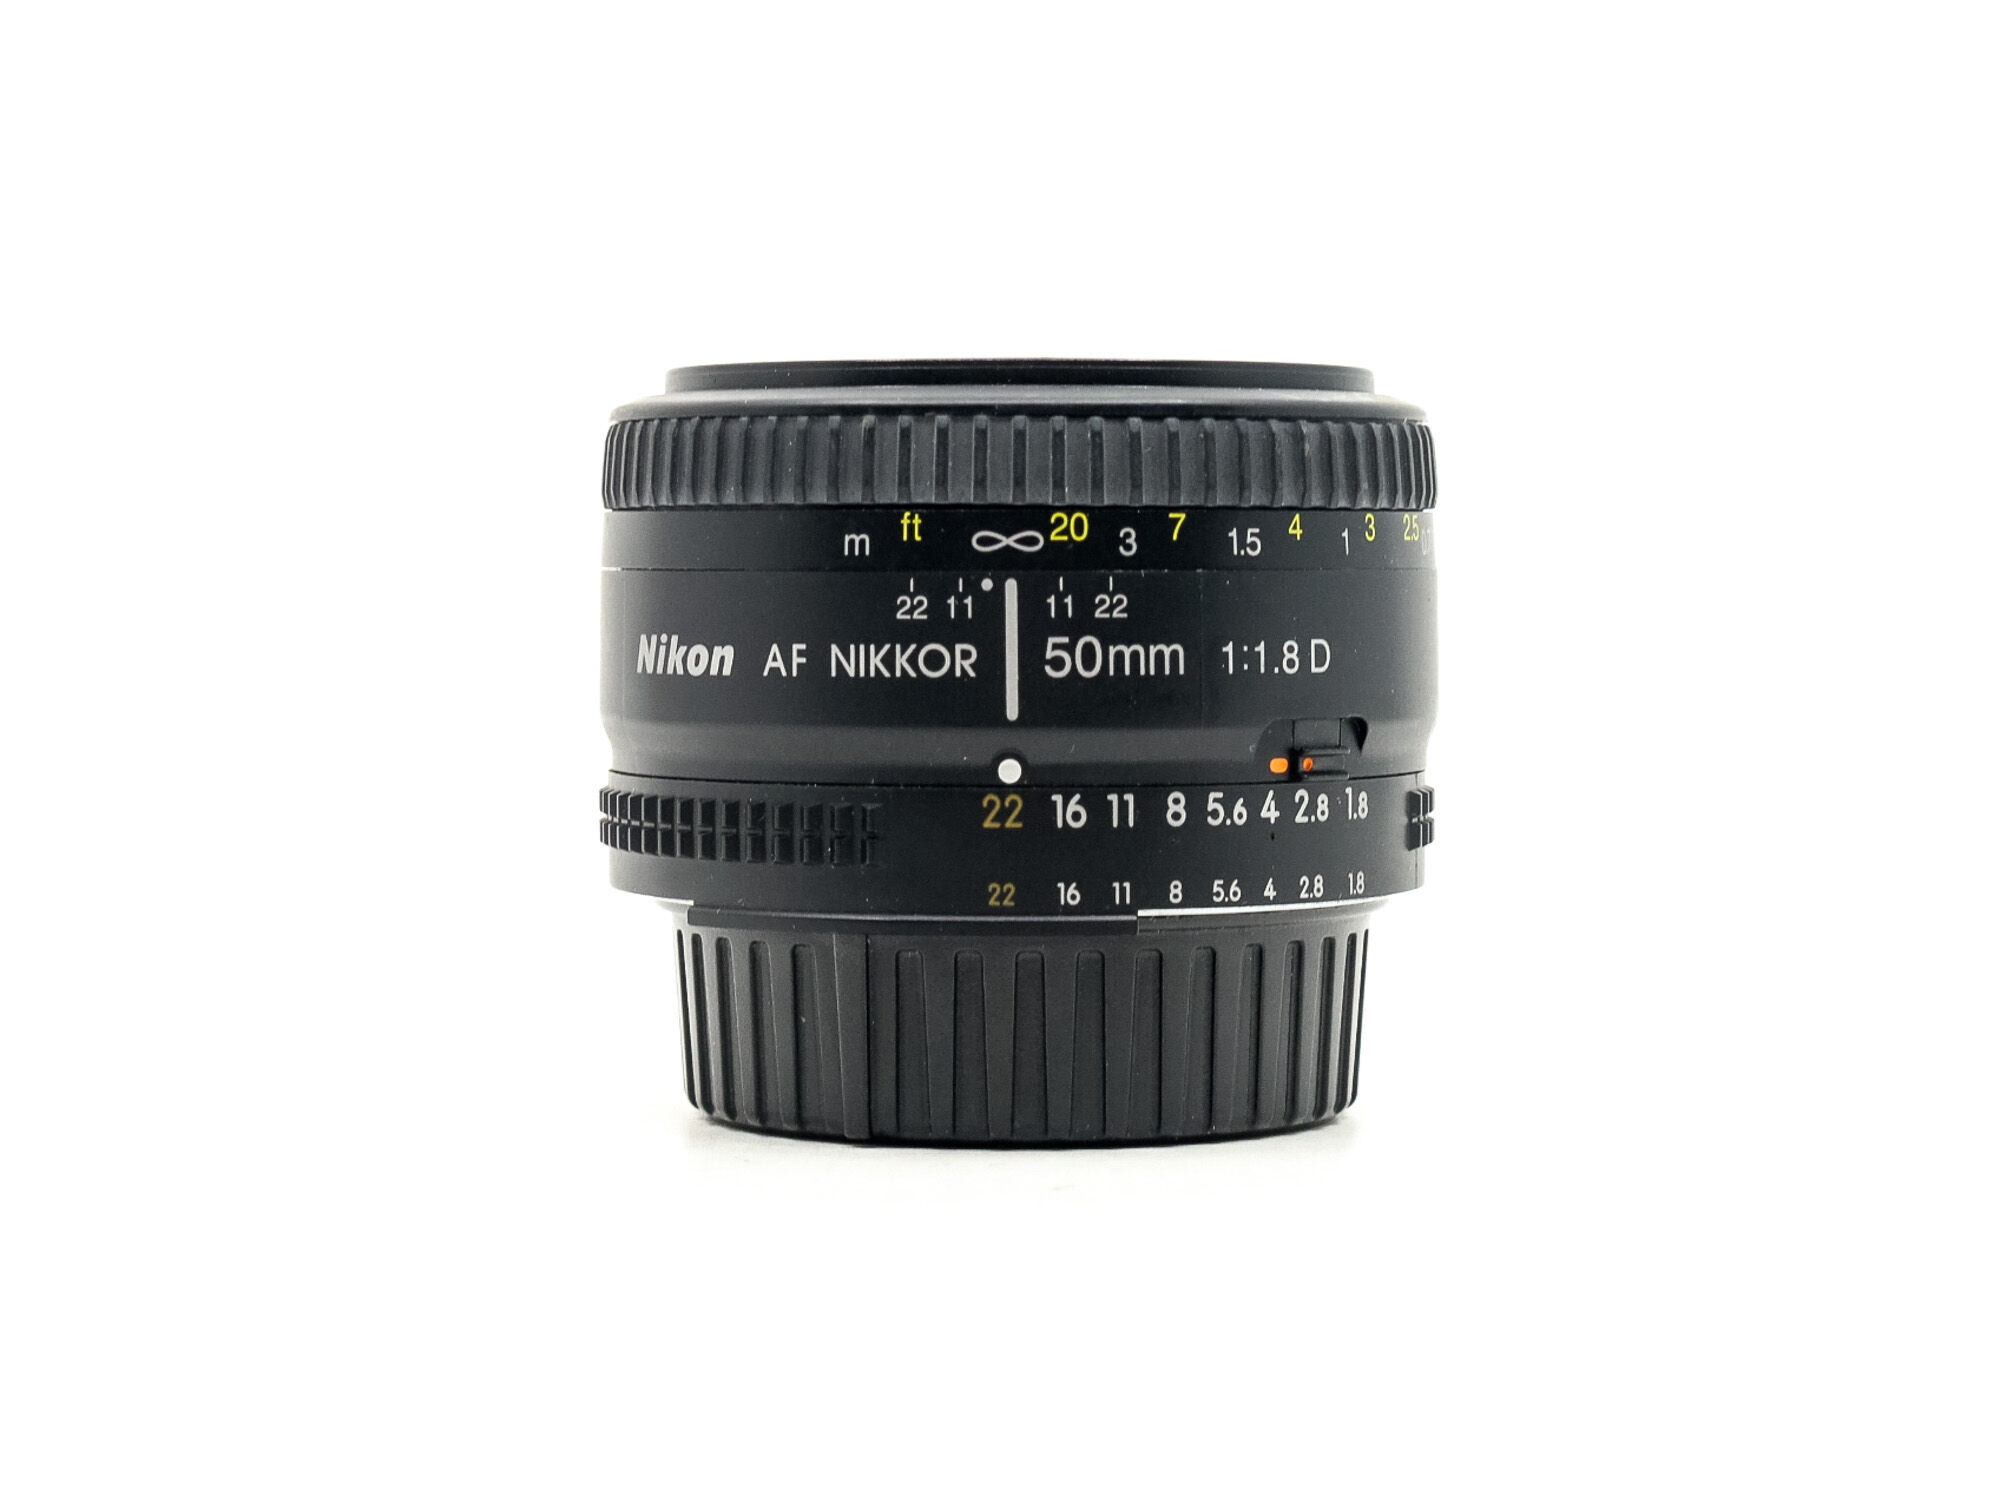 Nikon AF Nikkor 50mm f/1.8D (Condition: Excellent)